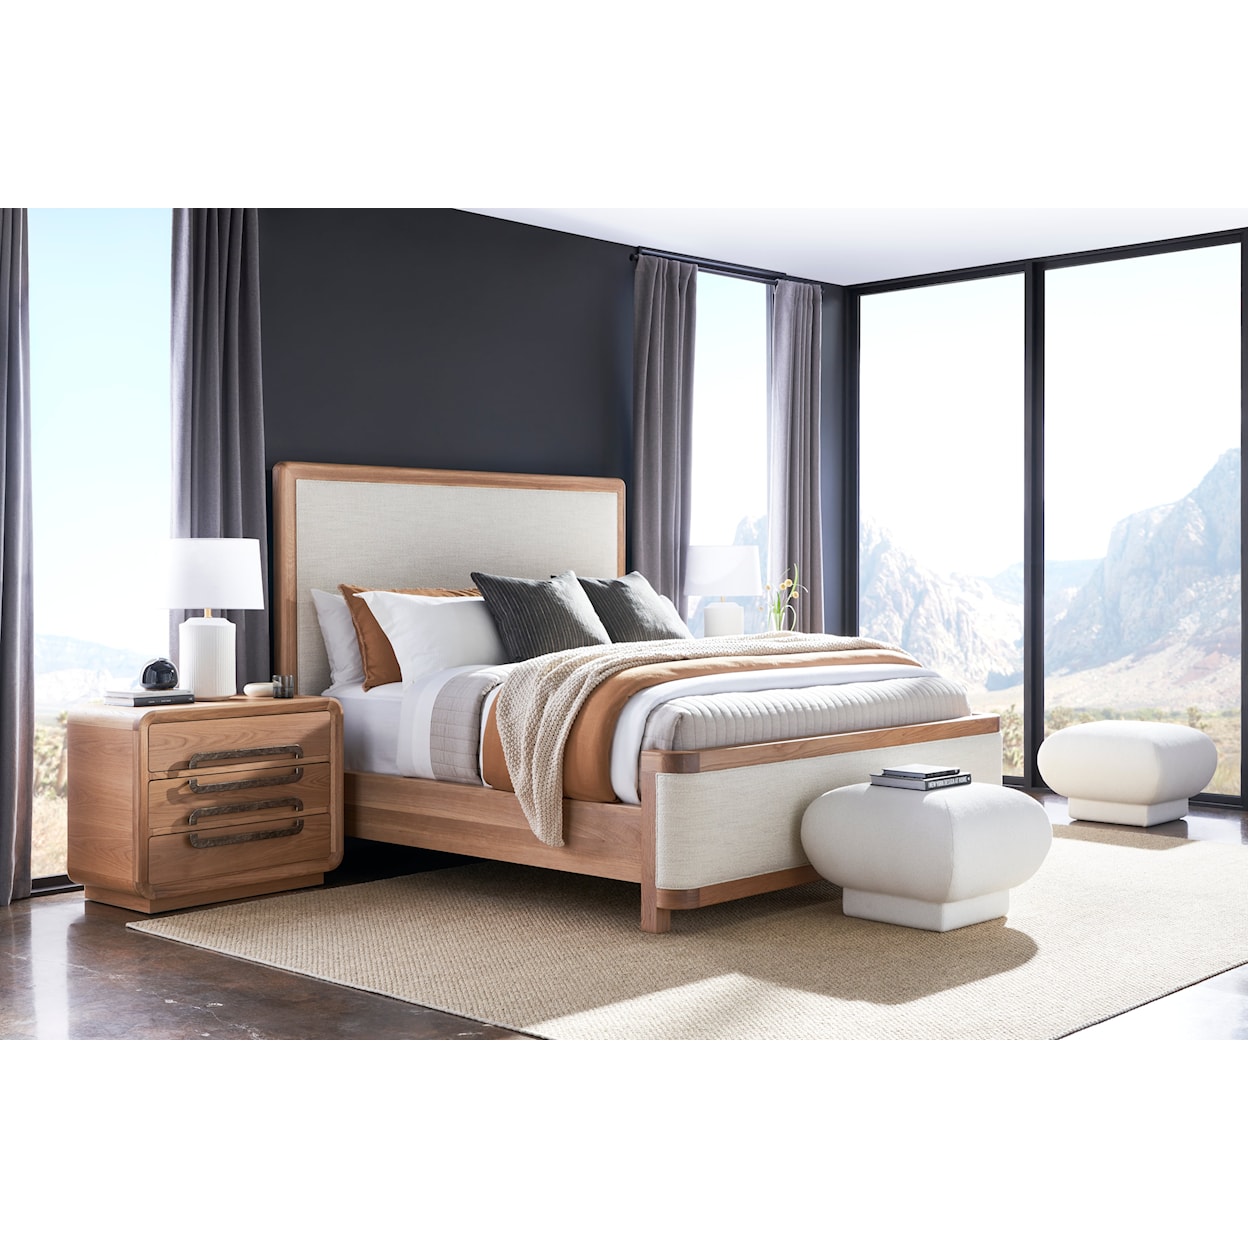 Vanguard Furniture Form King Upholstered Bed